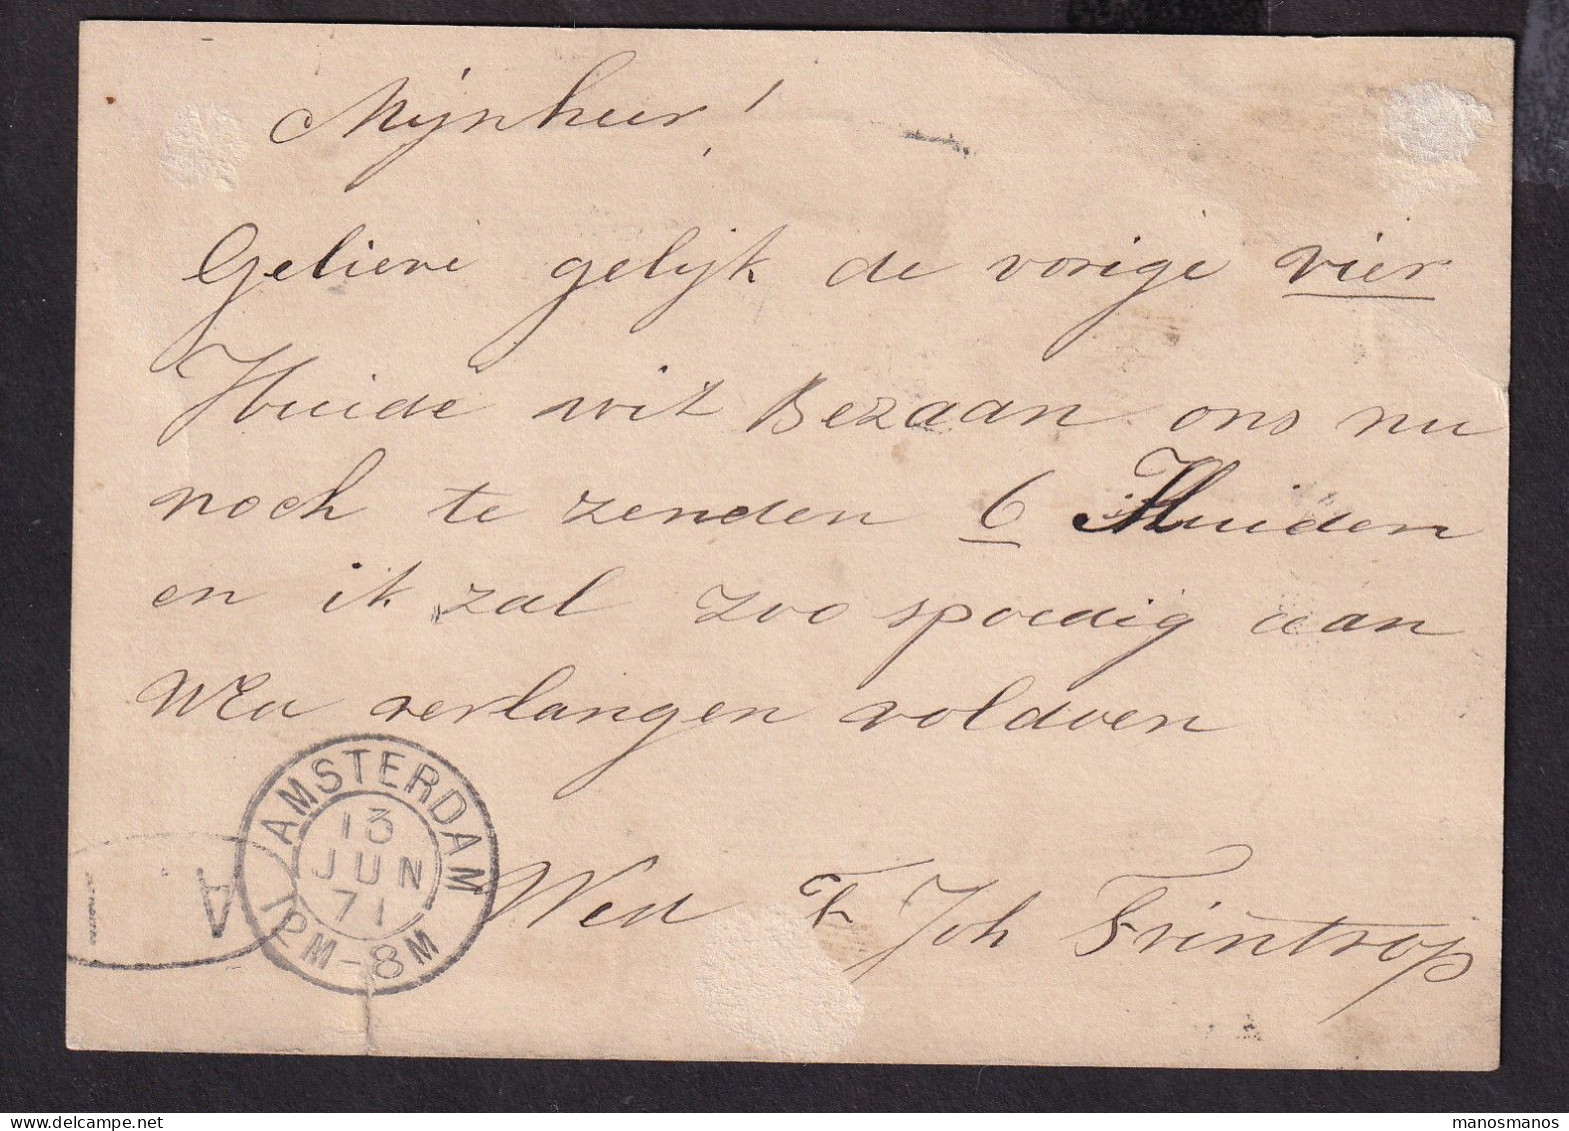 526 DT - Entier Postal Cachet Ambulant HAARL.-HELDER 1871 , Griffe Encadrée ZANDPOORT , Vers Amsterdam - Tren